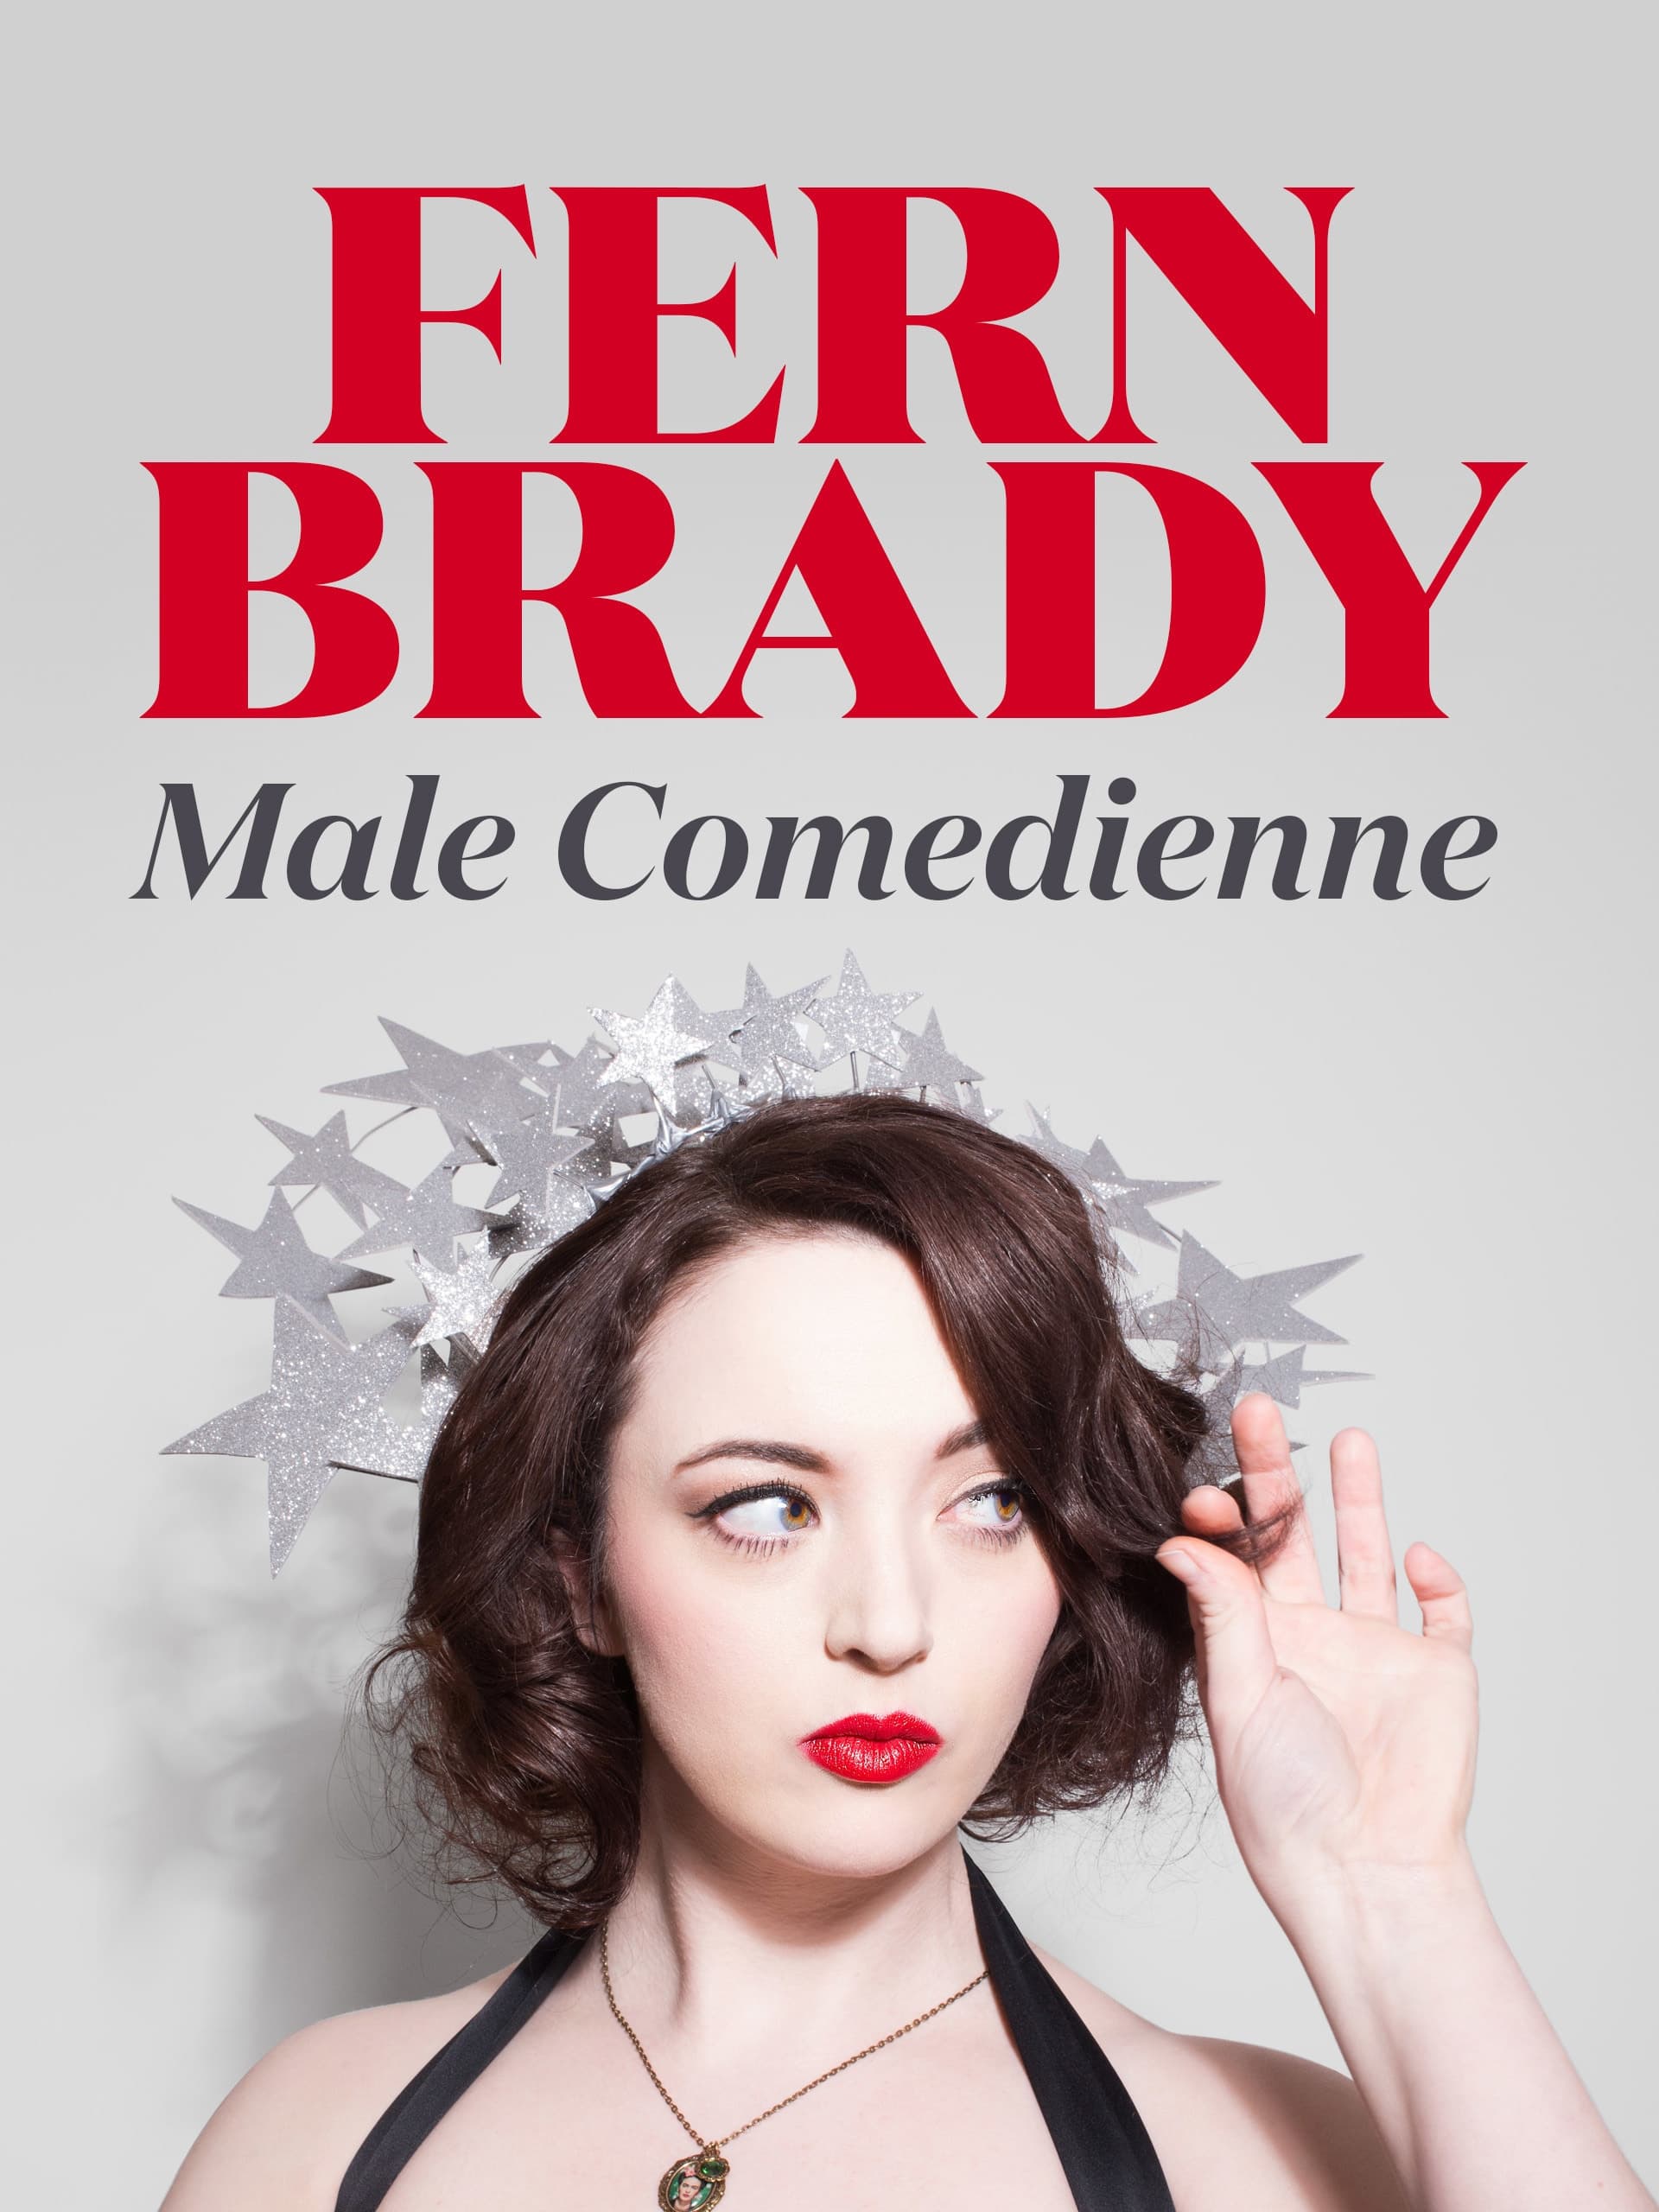 Fern Brady: Male Comedienne